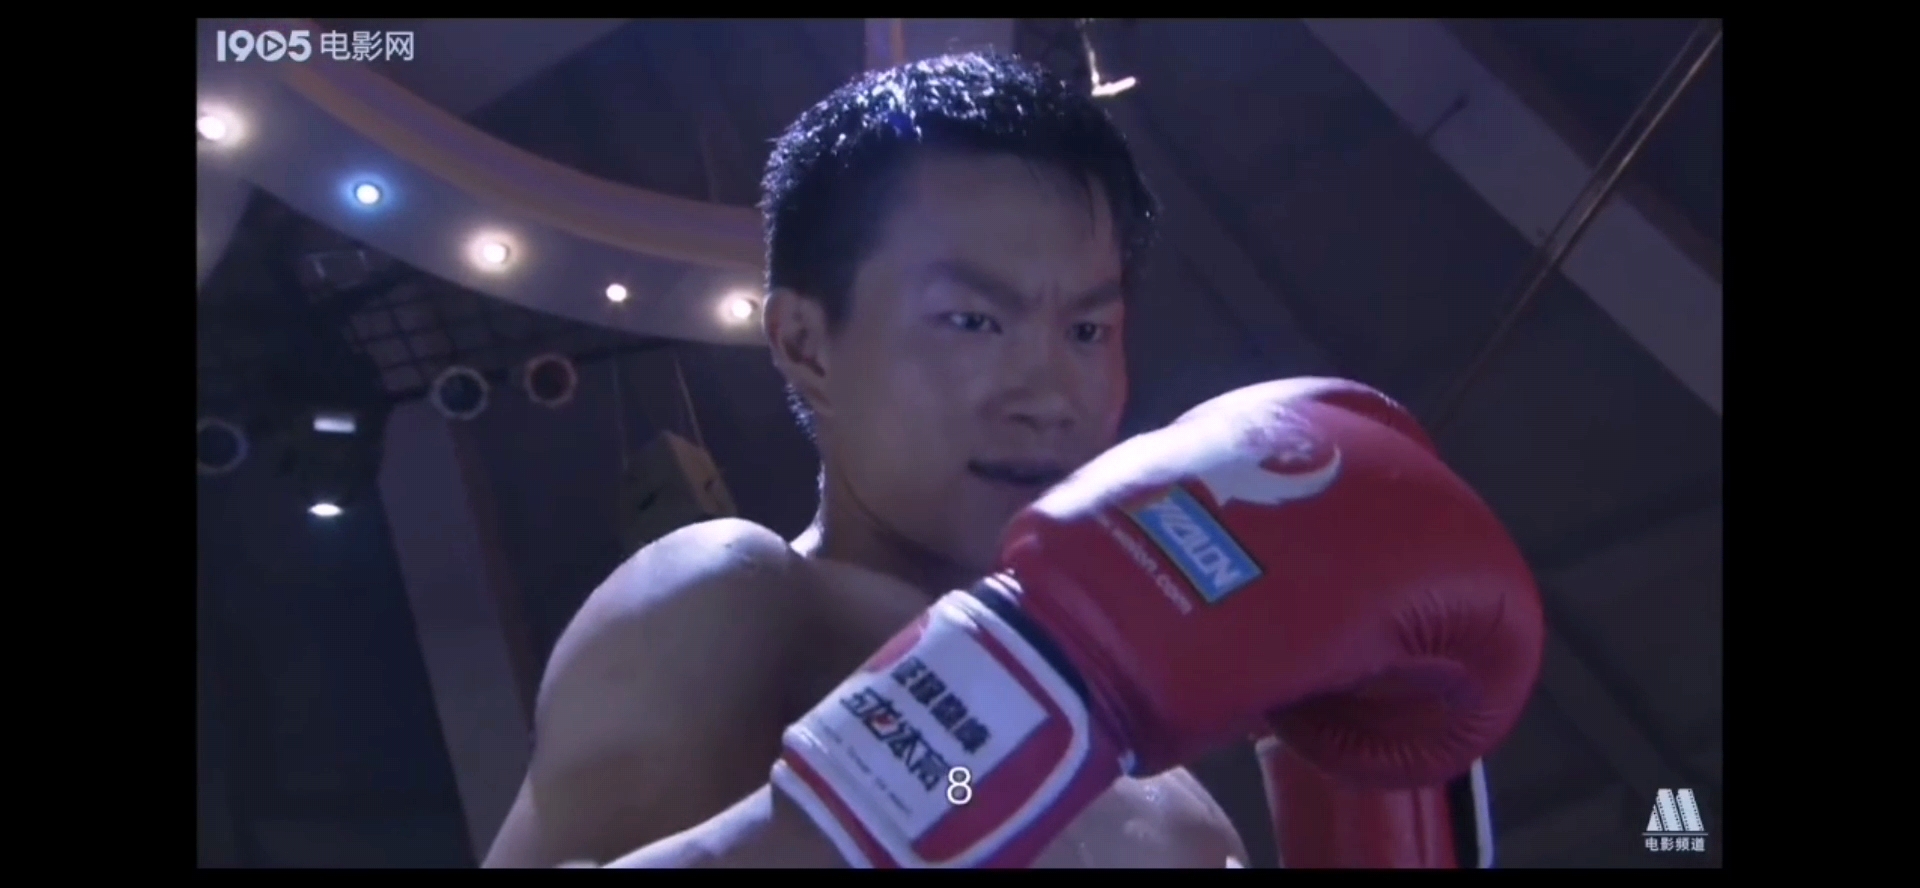 Boxing tv series scene4